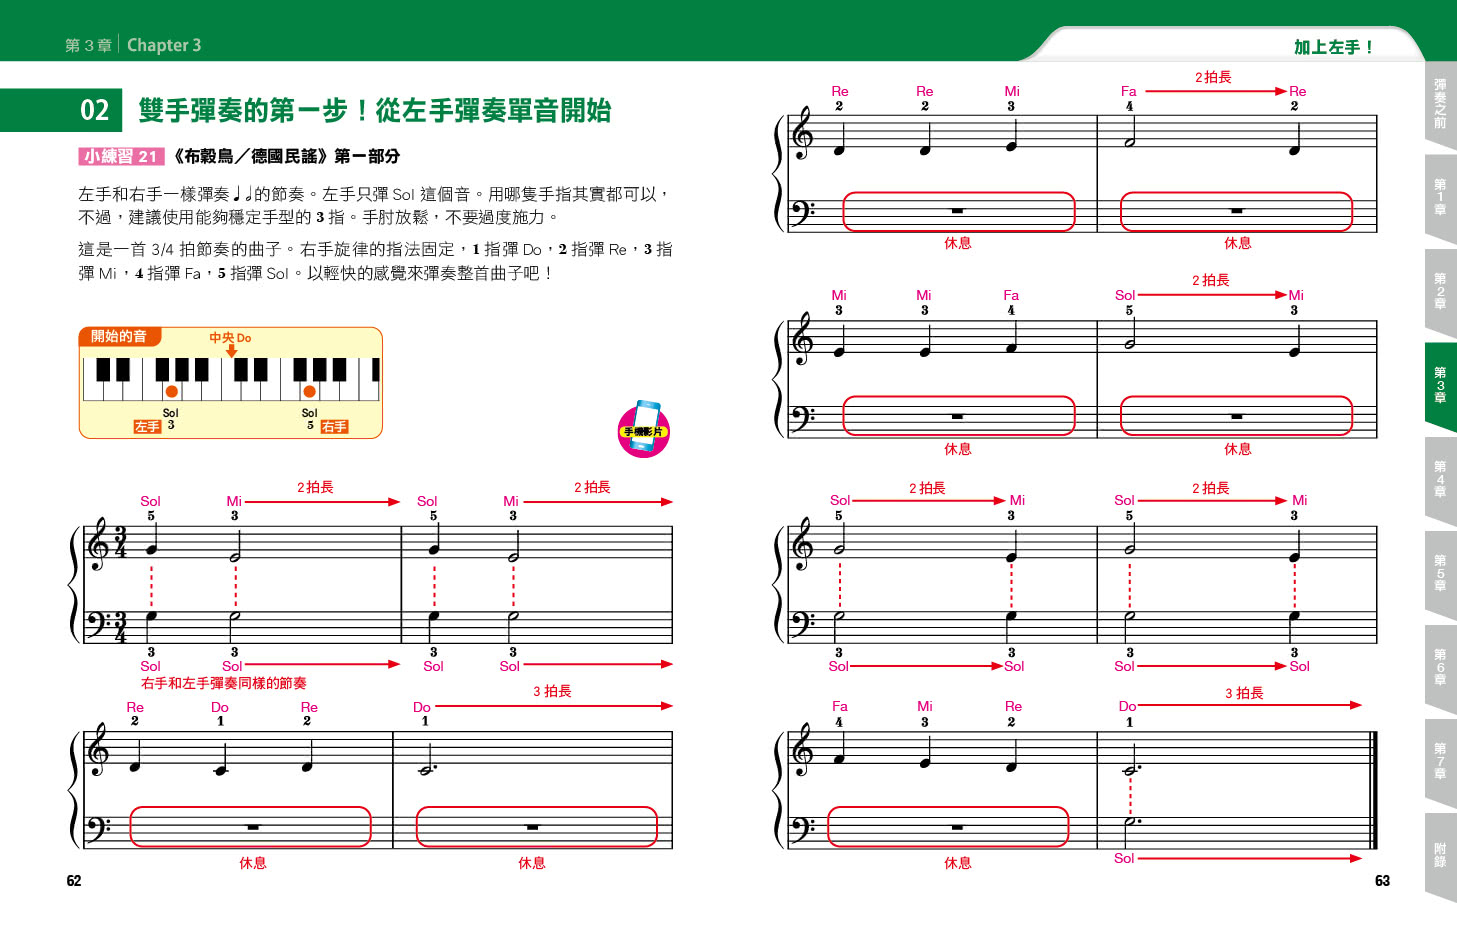 大人的鋼琴教科書：QR Code影片＋全圖解 學會手型、觸鍵、指法安排、基礎和弦和雙手彈奏